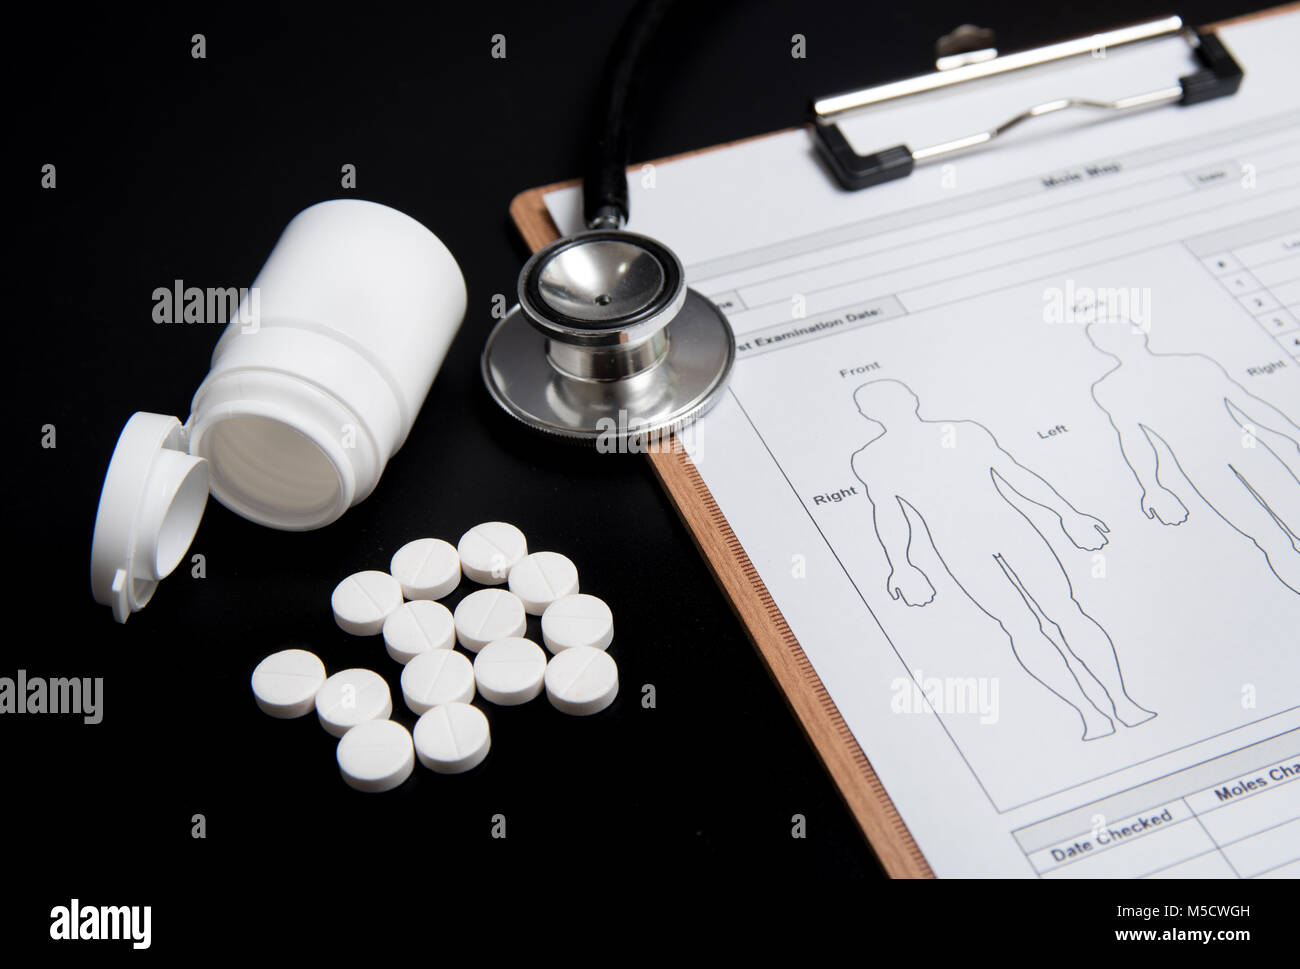 Weiße Pillen und eine weiße Flasche, zusammen mit einem Stethoskop und ein medizinisches Diagramm, werden über einen schwarzen Hintergrund. Stockfoto